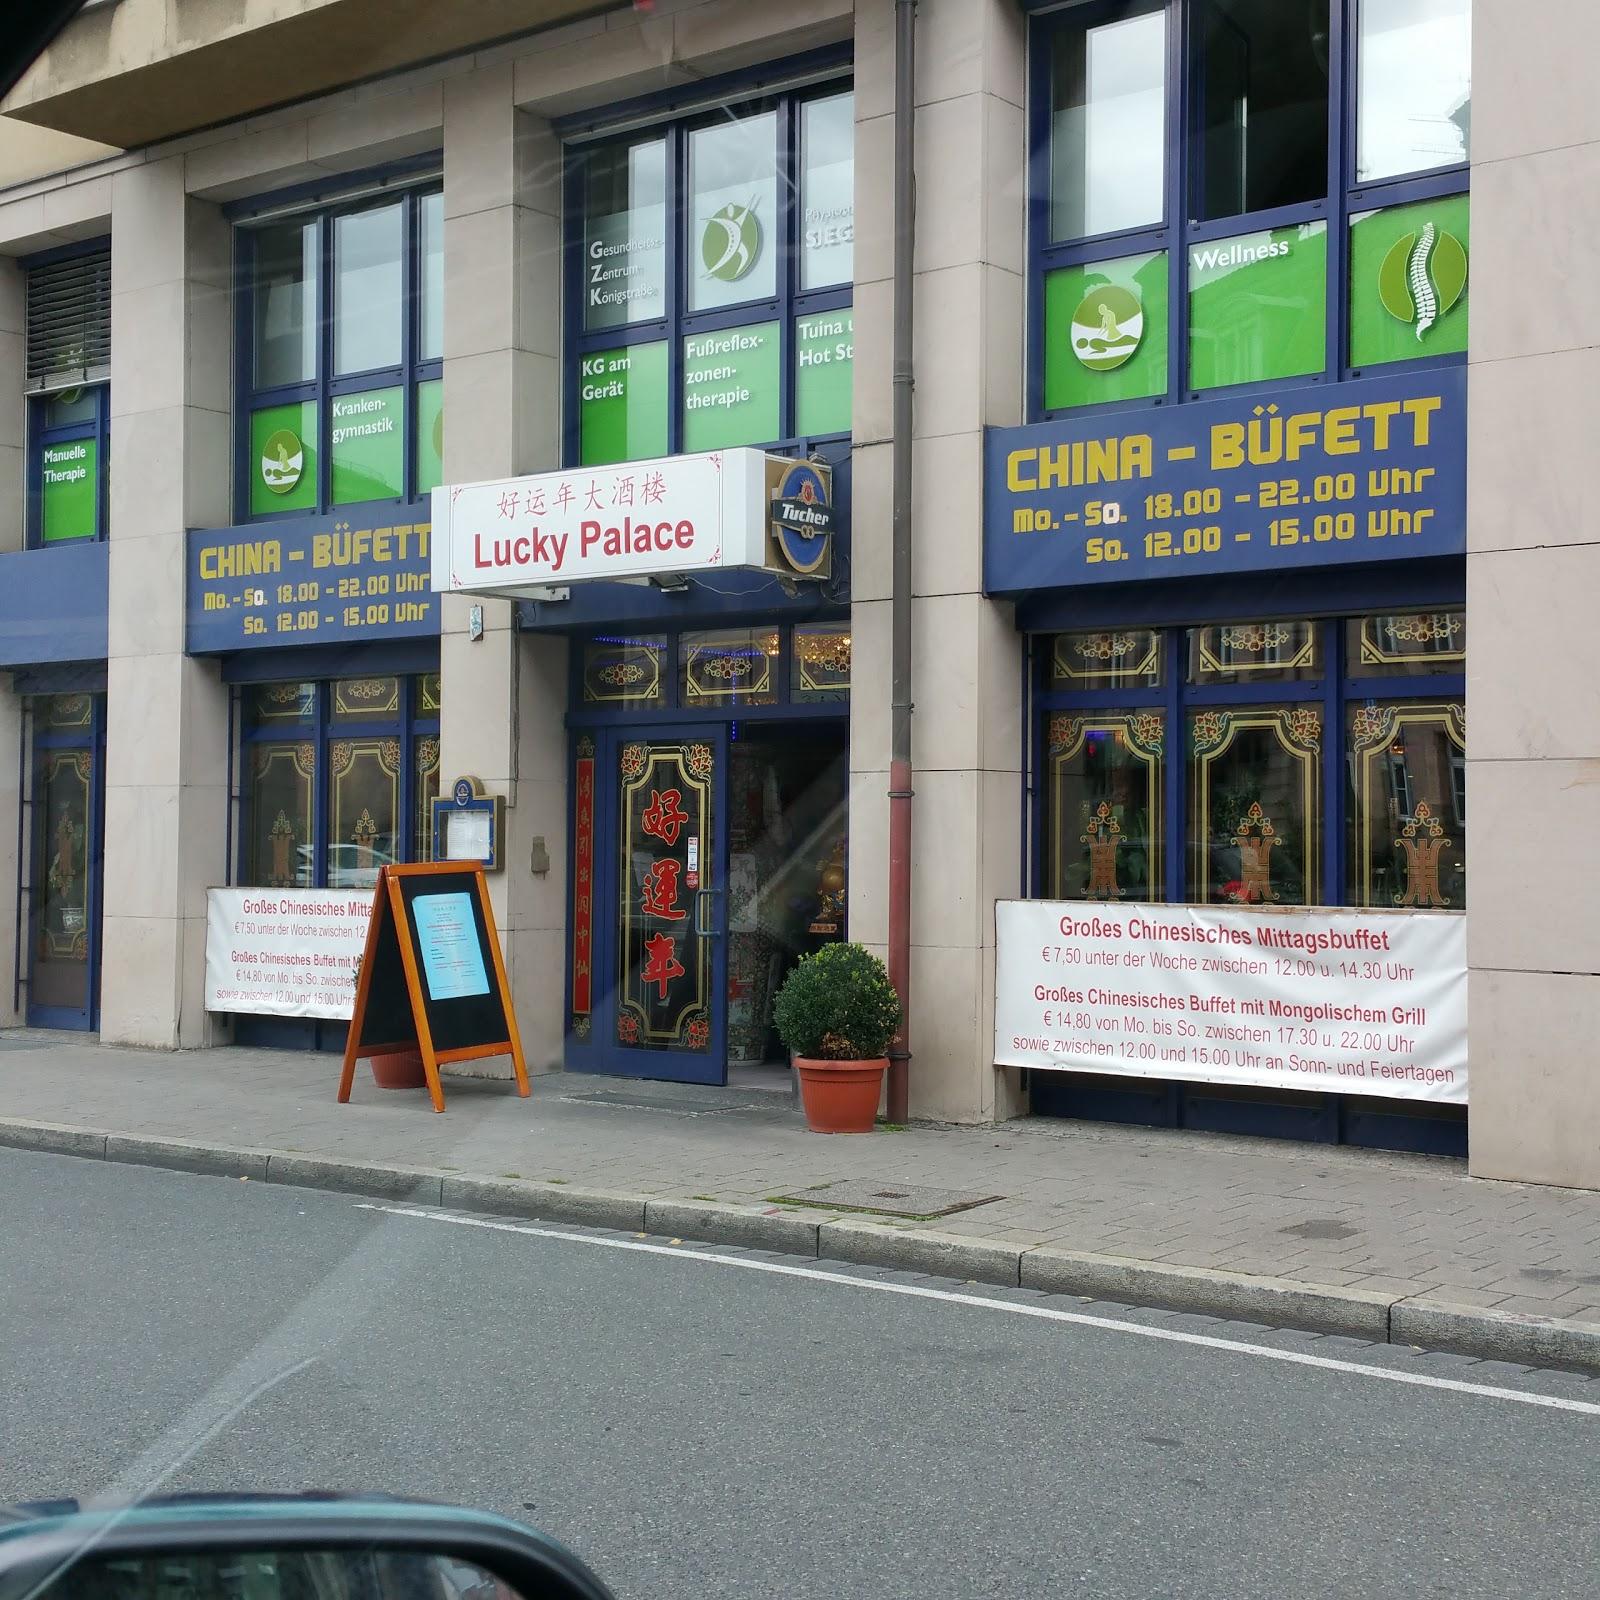 Restaurant "China-Restaurant Lucky Palace" in Fürth